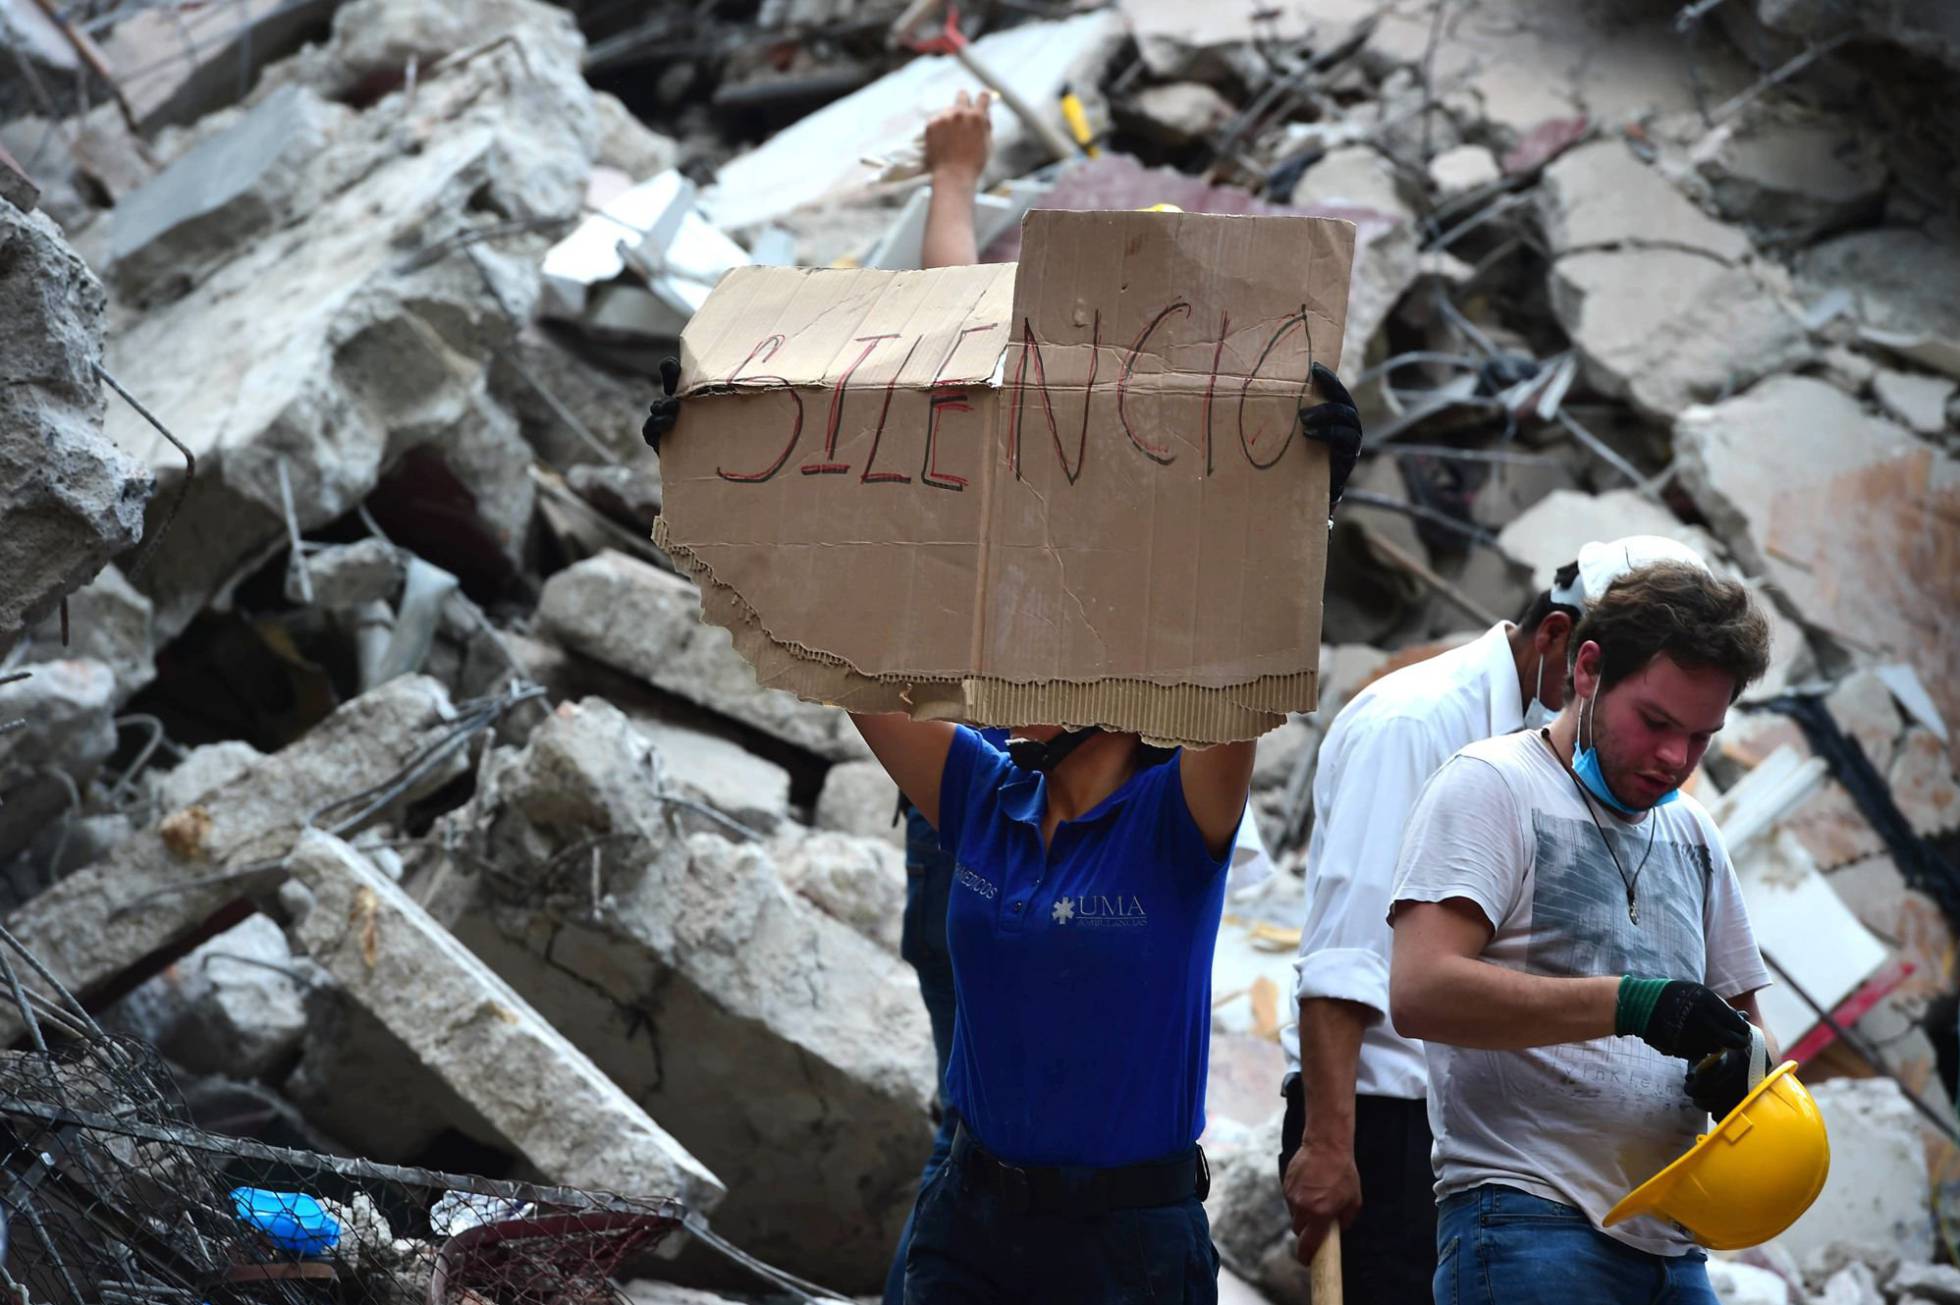 TERREMOTO NO M�XICO Mais de 220 mortos ap�s forte terremoto no M�xico.FotoRONALDO SCHEMIDT AFP